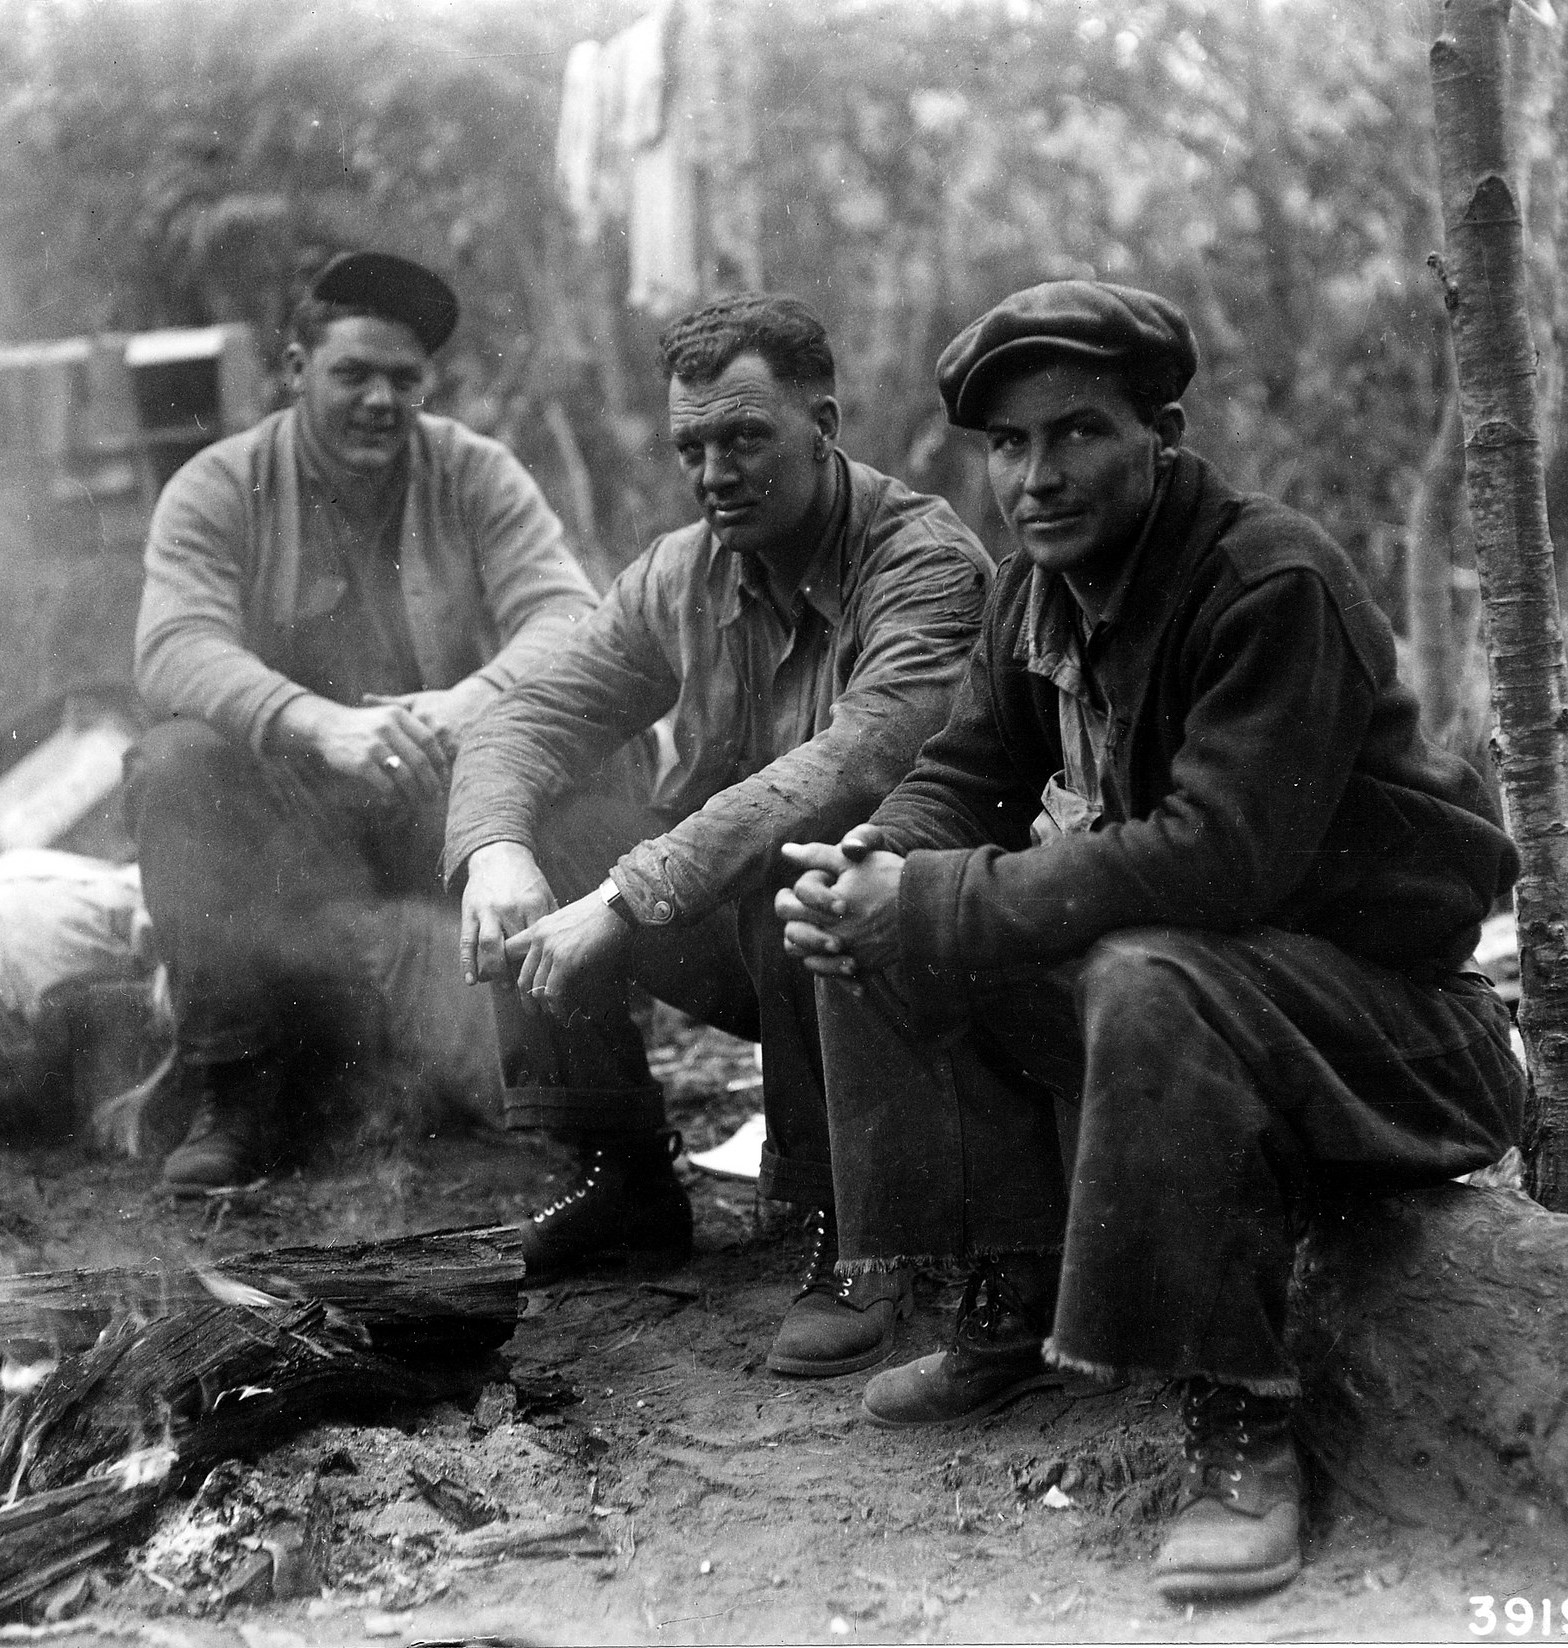 CCC men on Siskiyou NF in 1936